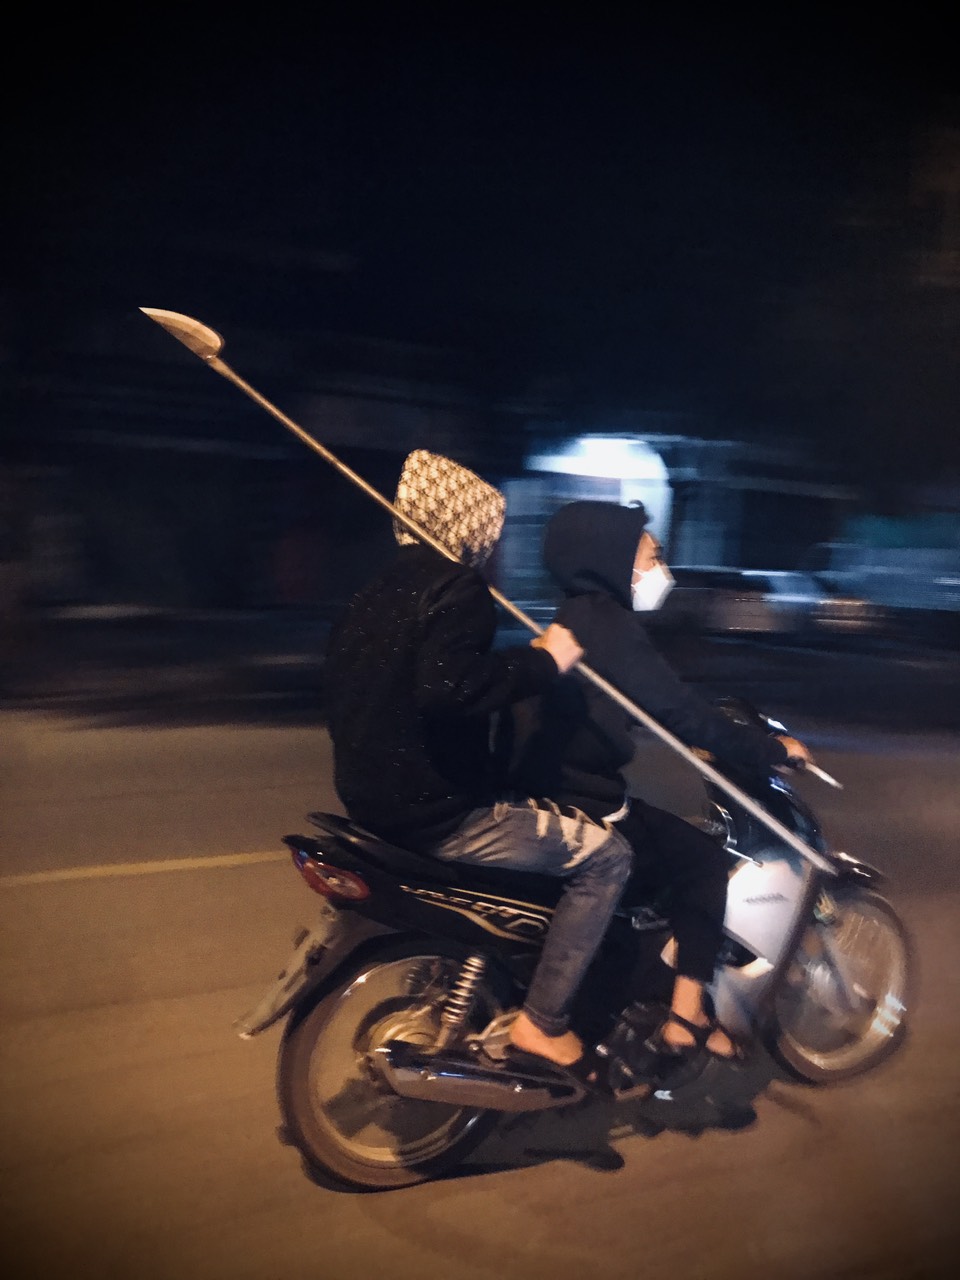 Bắt nhóm thanh thiếu niên không đội mũ bảo hiểm mang dao phóng lợn bị hỗn chiến ở Lào Cai - Ảnh 1.